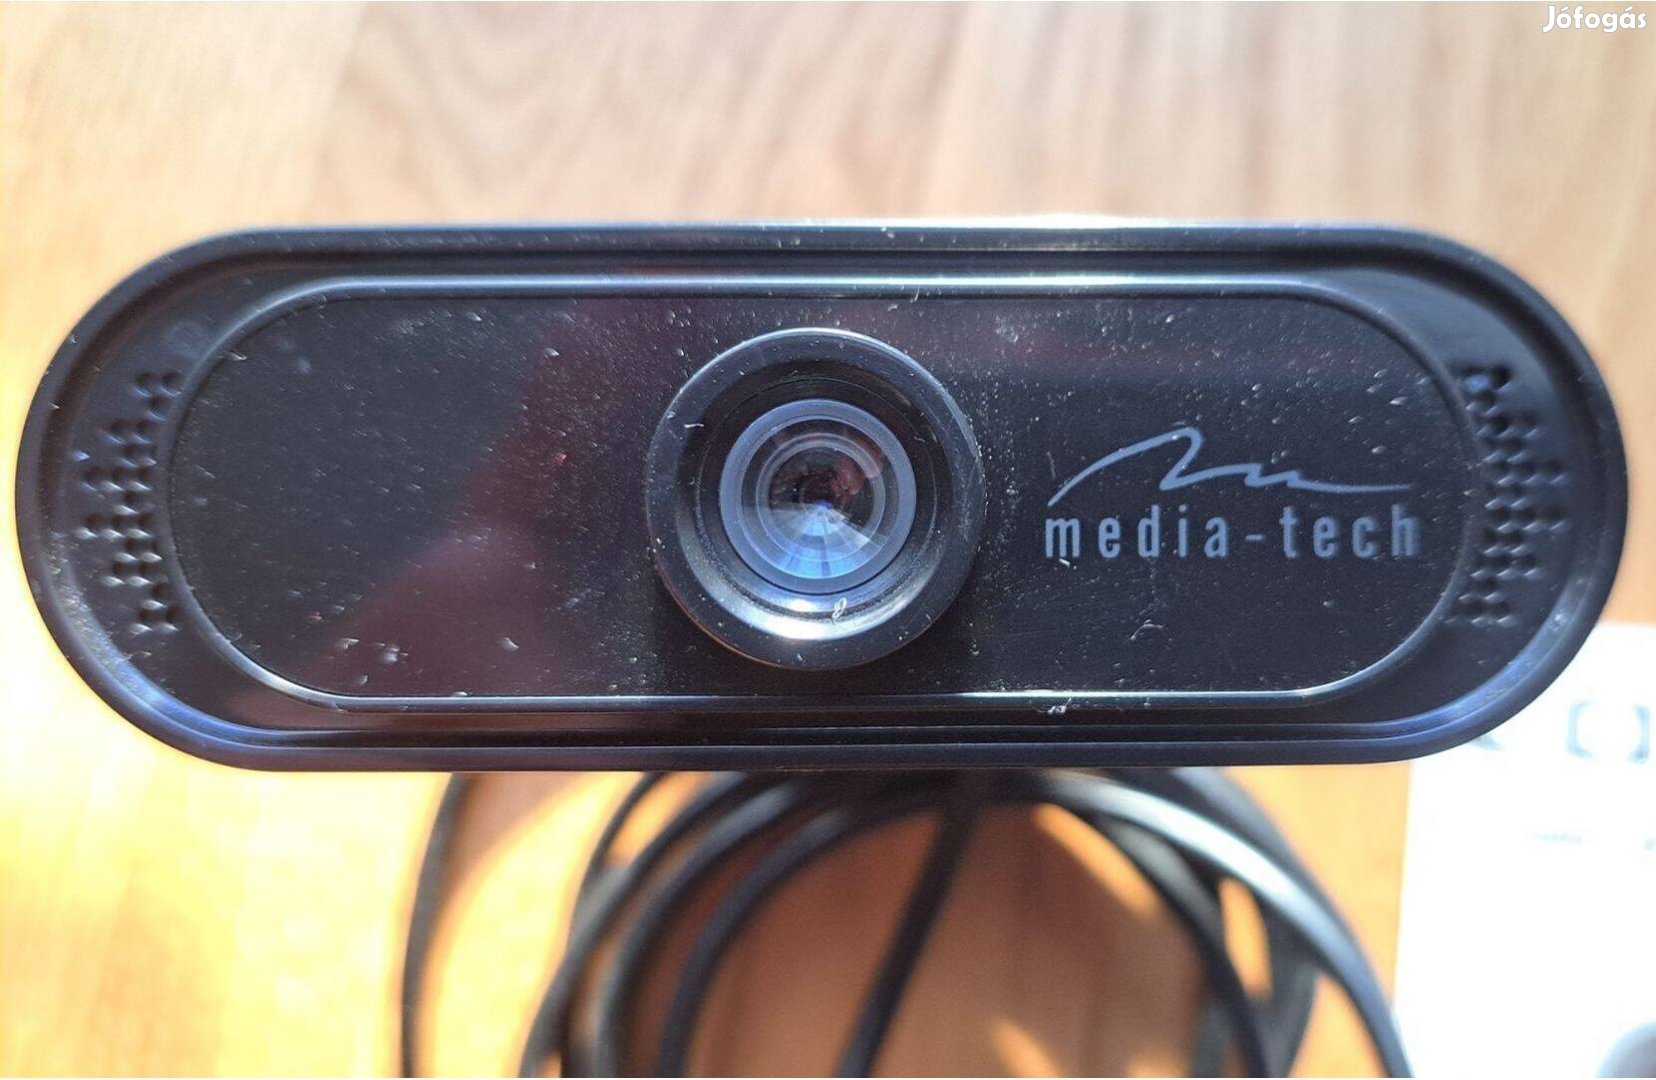 Media-Tech Look IV webkamera